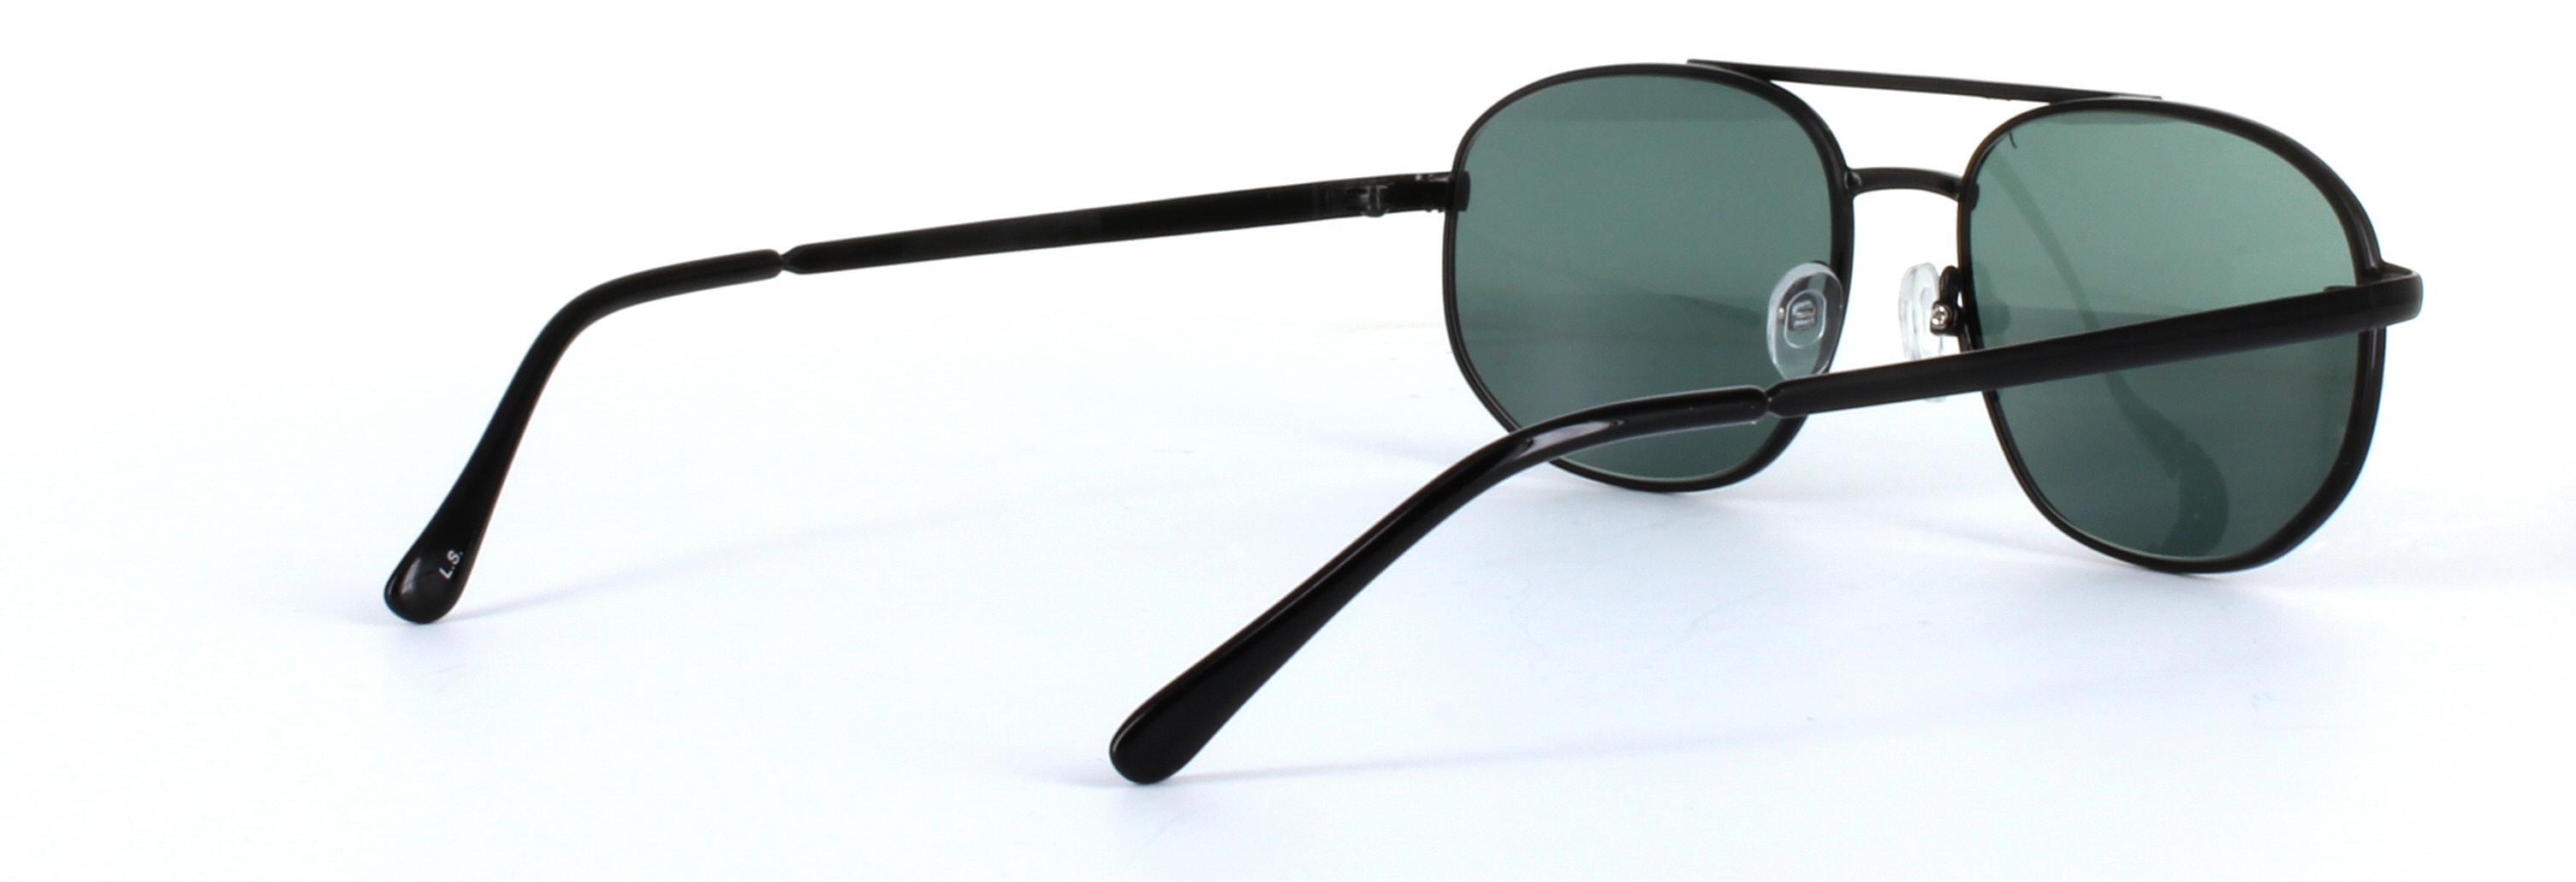 Spartan Black Full Rim Aviator Metal Sunglasses - Image View 4